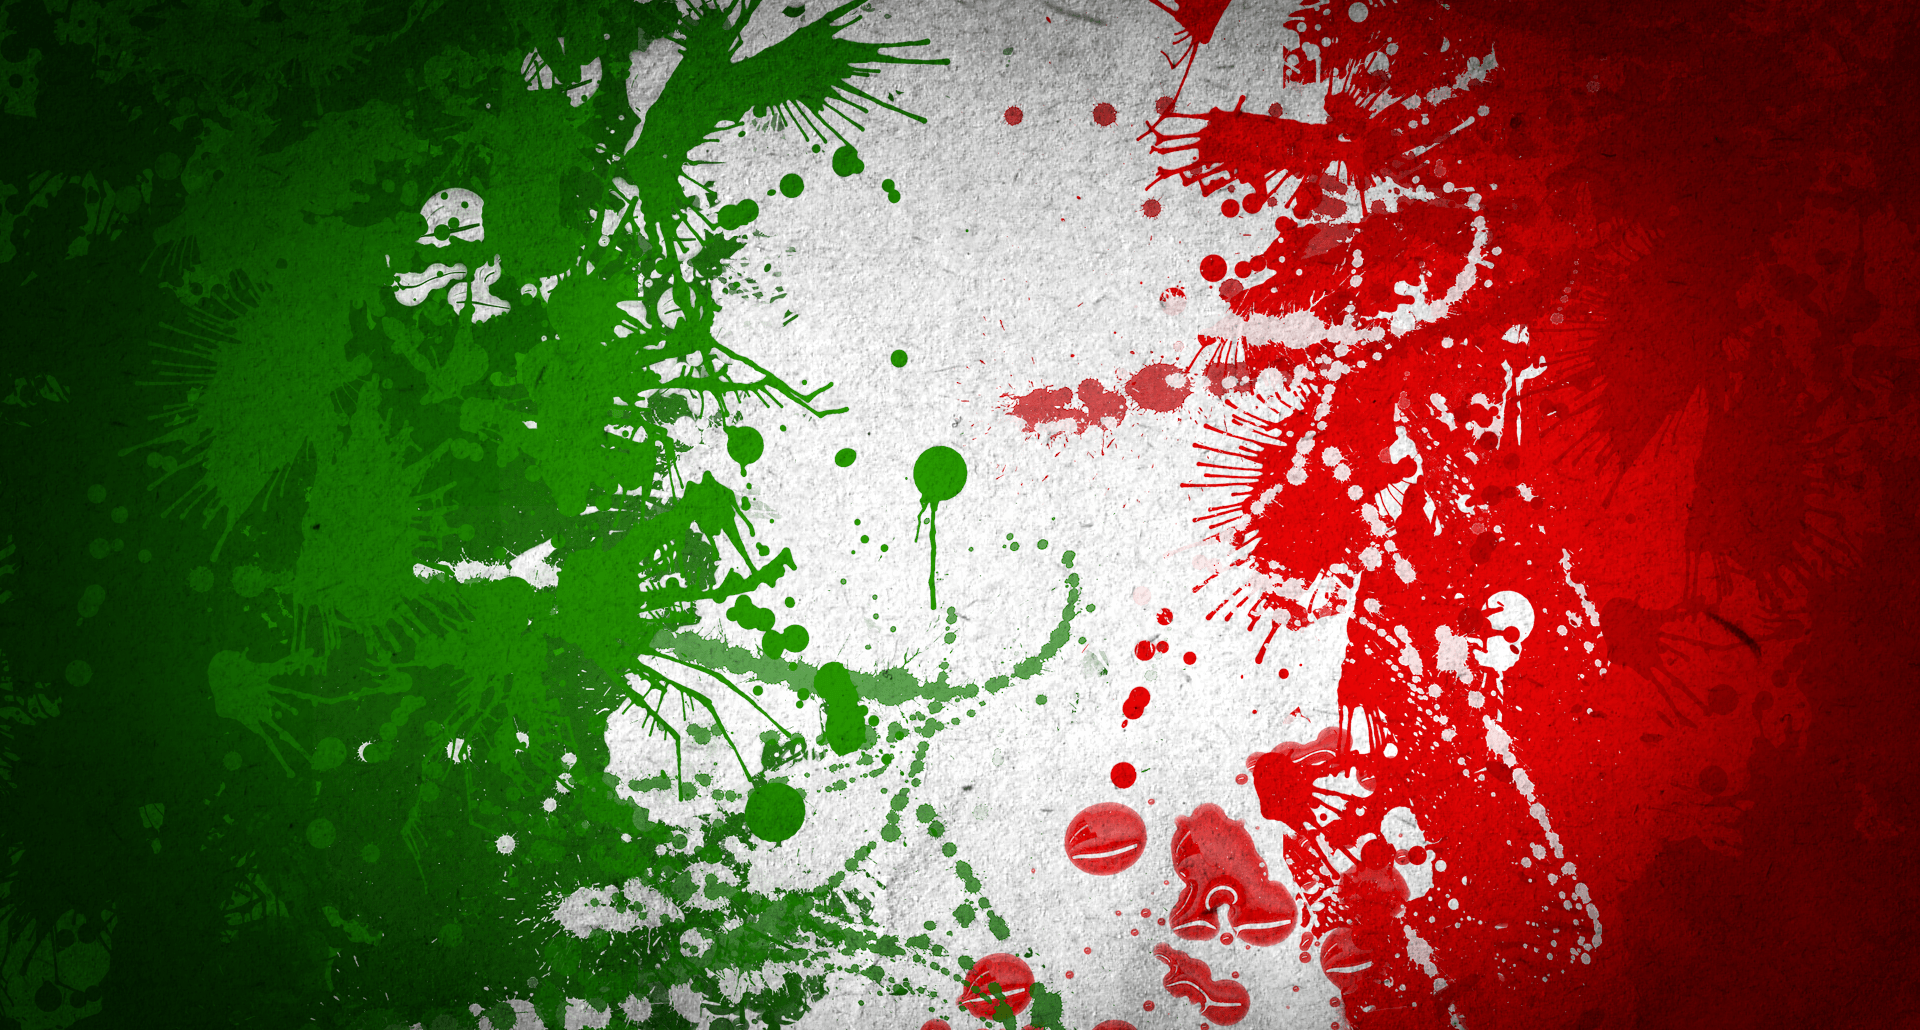 italian wallpaper for desktop. Flag art italy wallpaper. High